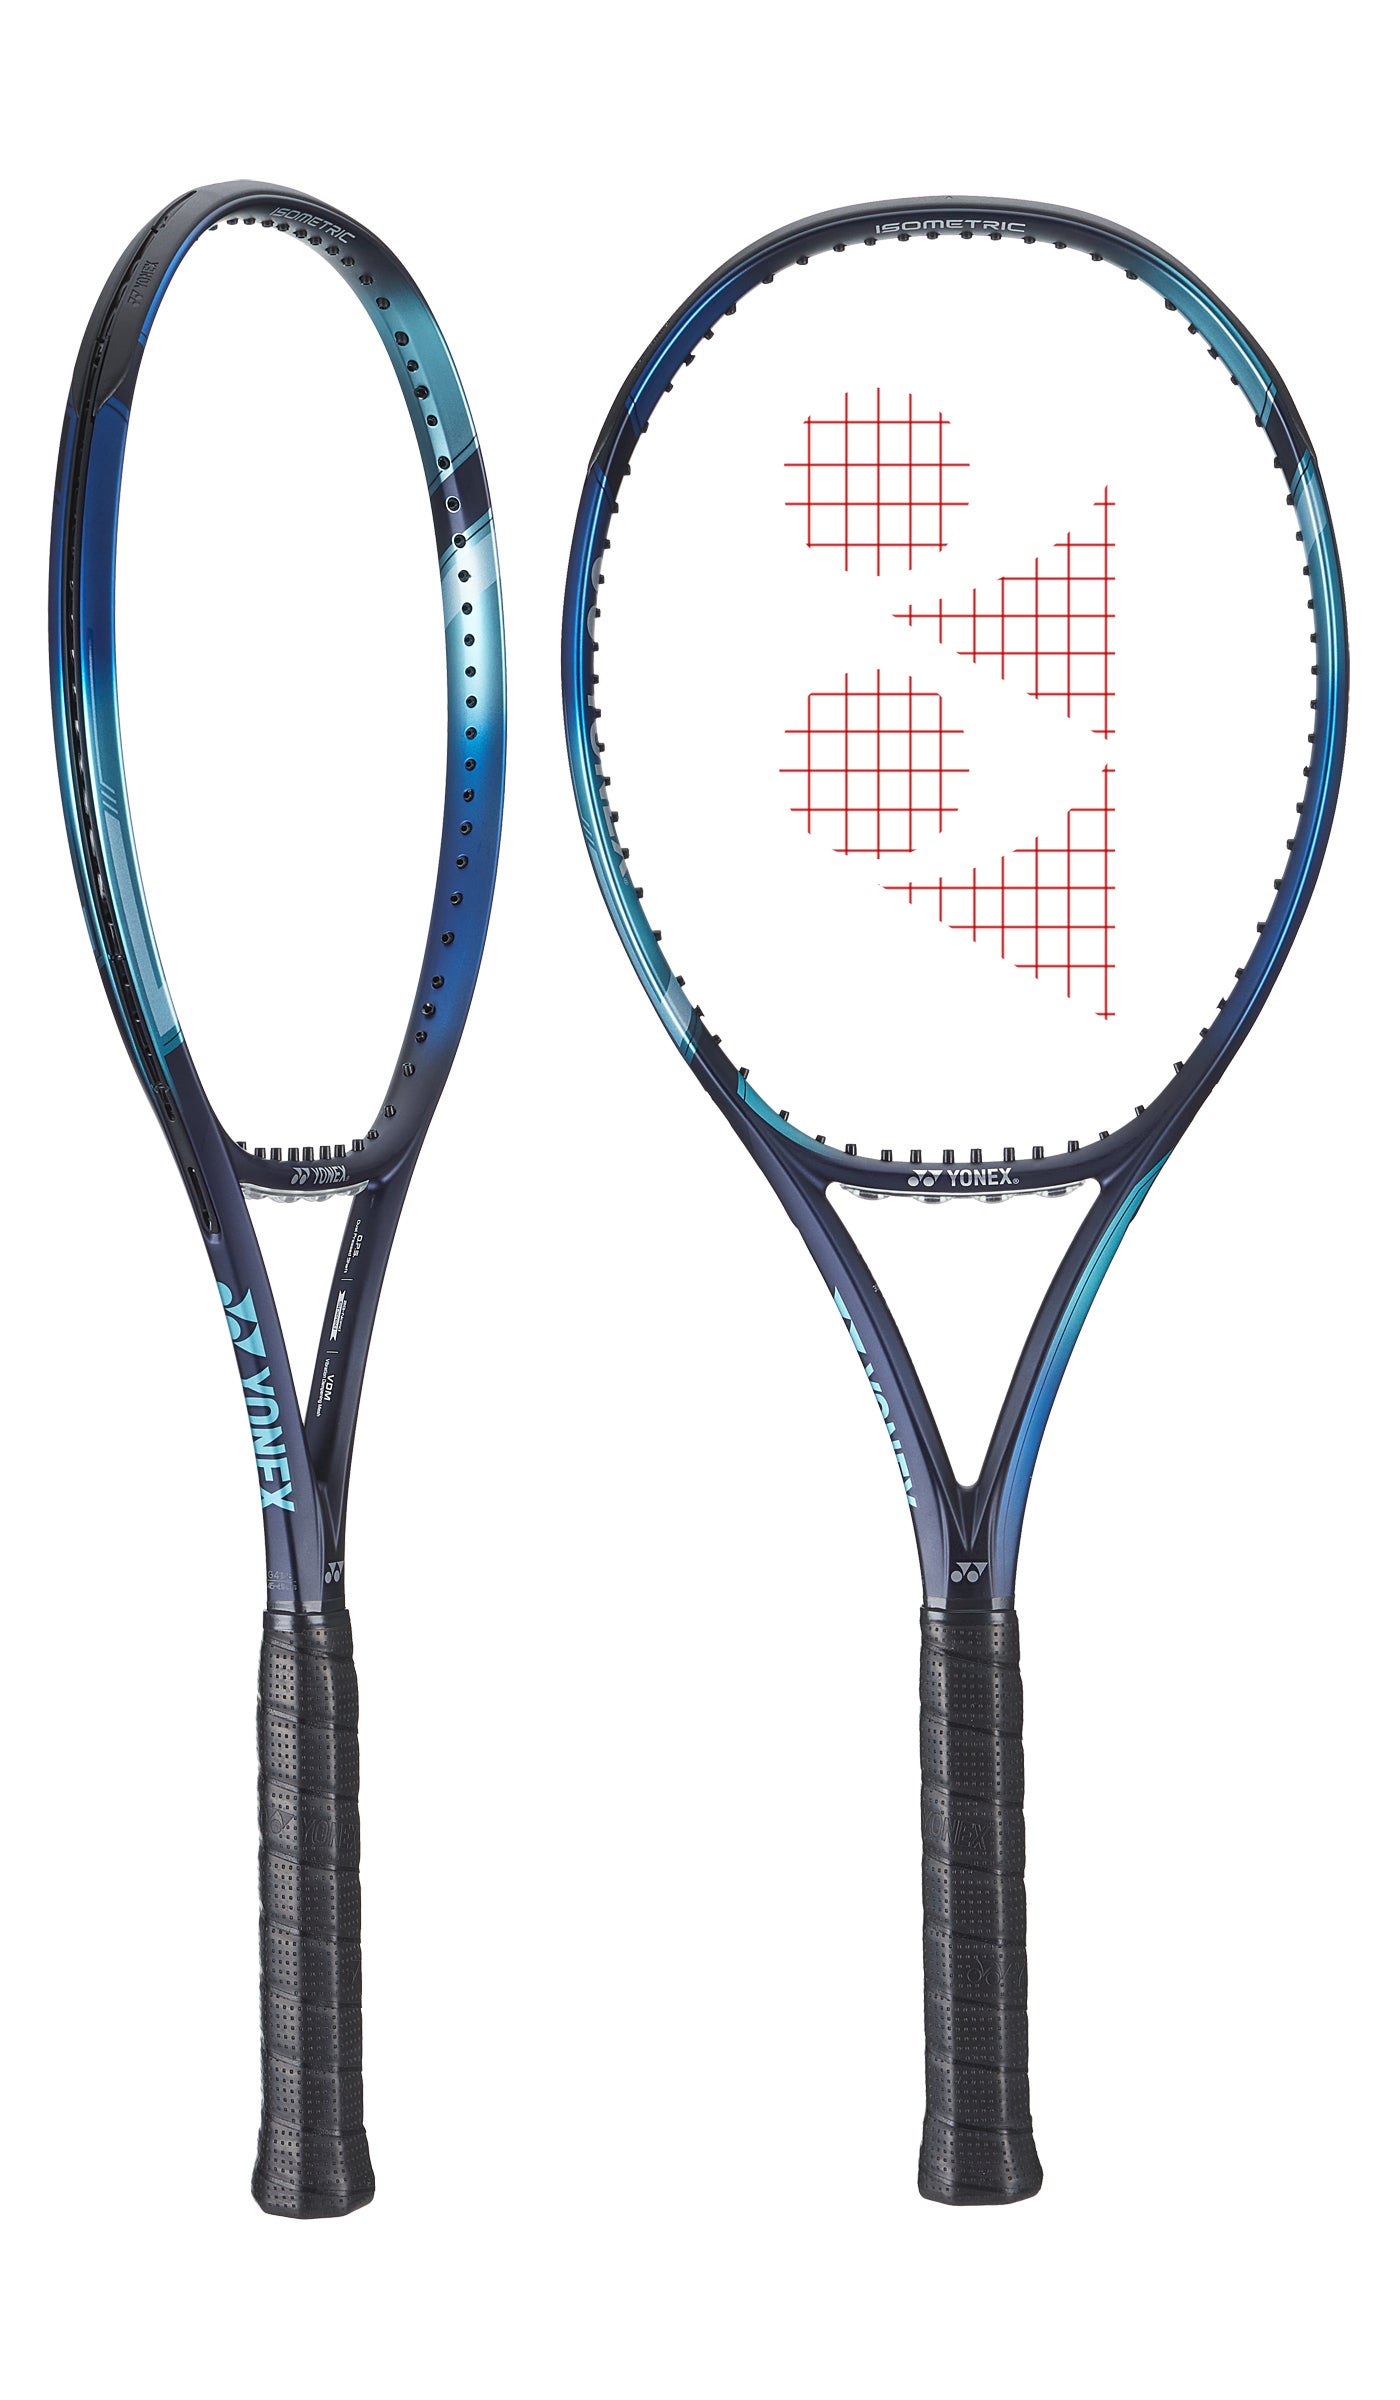 Larger Sweet Spot Yonex Tennis Racquet EZONE 98 285g STRUNG BLUE G3 